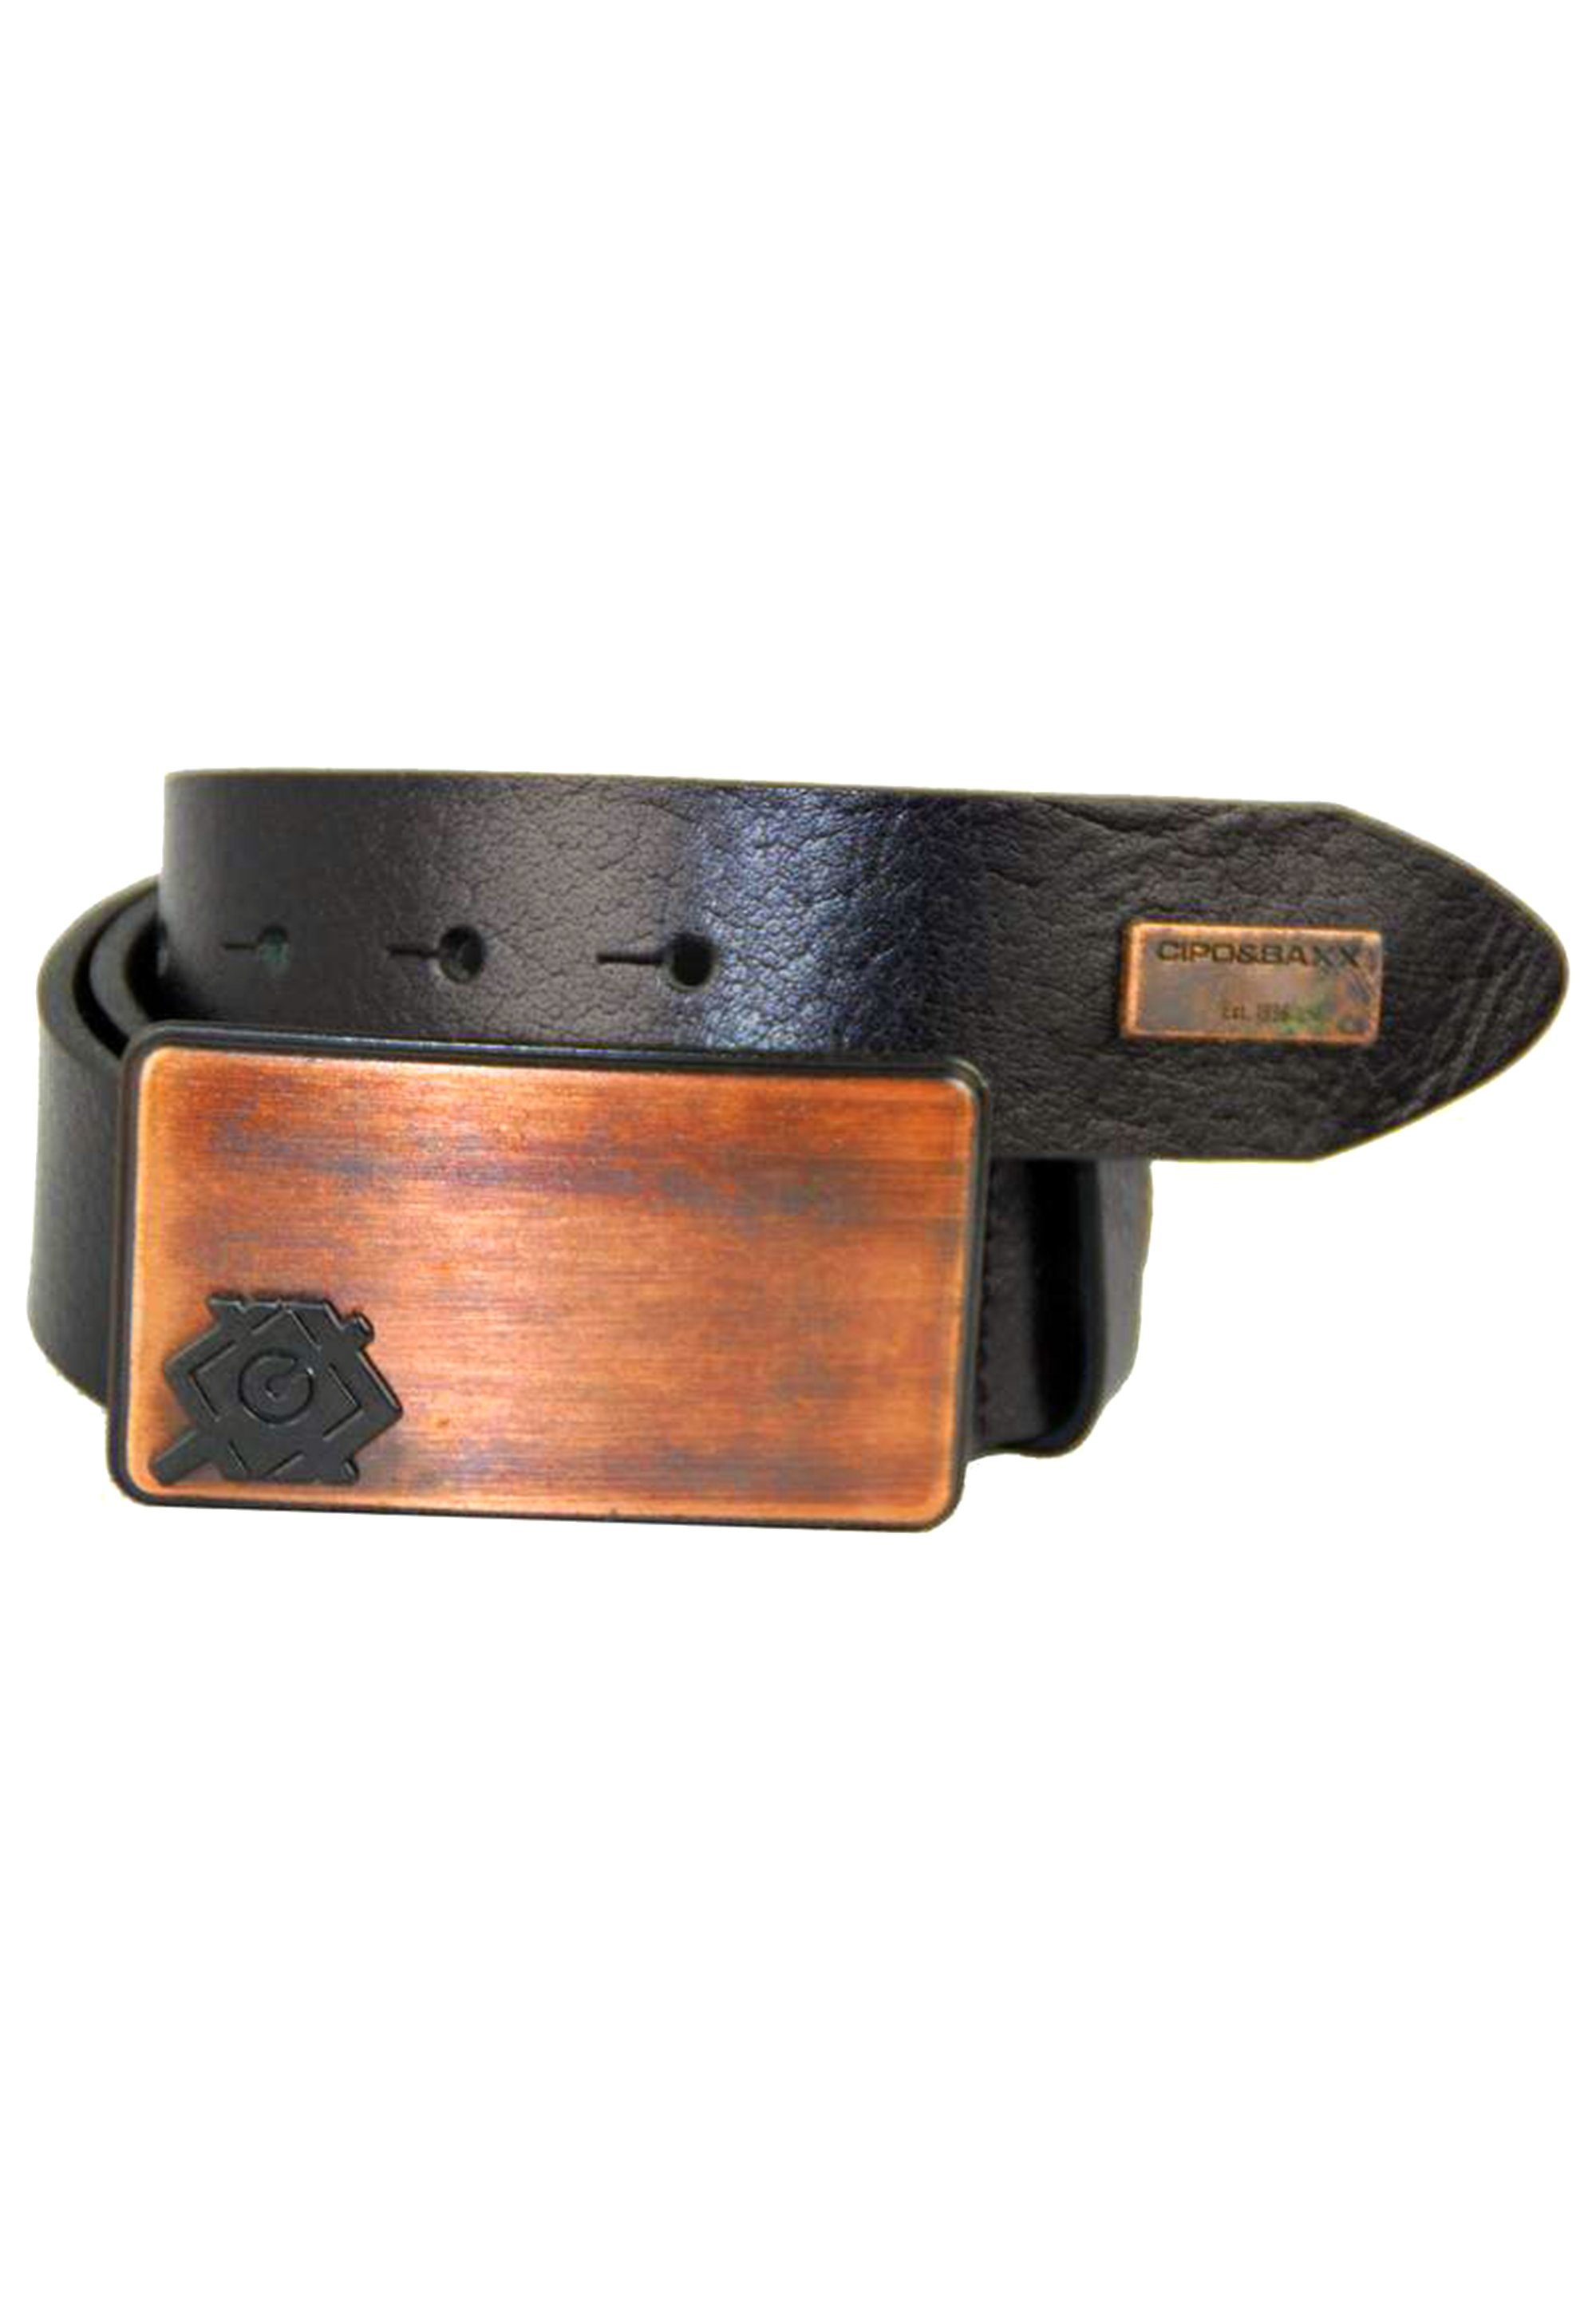 Cipo & schwarz Metallschnalle mit Baxx Ledergürtel stylischer